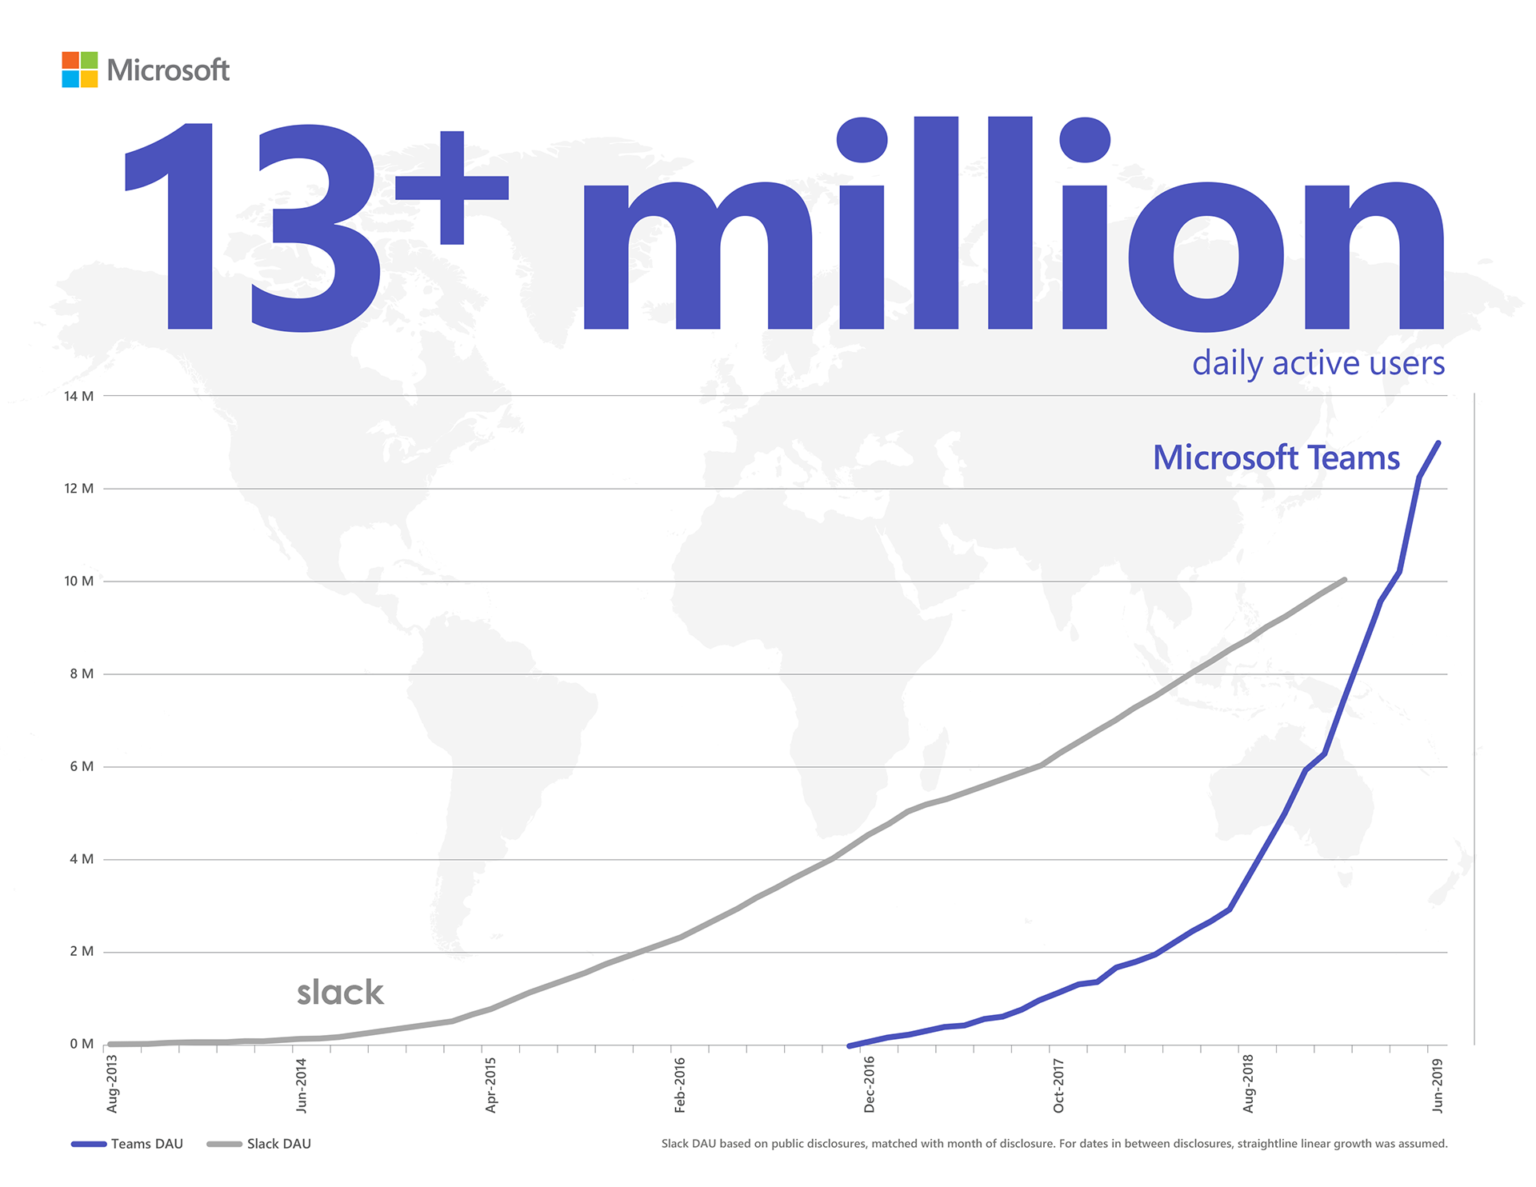 Teabeülevaated näitavad, et Microsoft Teams, mida kasutab igapäevaselt 13+ miljonit aktiivset kasutajat, edestab Slacki kasutajate arvu poolest. Slacki igapäevaste aktiivsete kasutajate hulk põhineb avalikustatud andmetel. Andmete avalikustamiste vaheliste kuupäevade puhul eeldati sirgjoonelist lineaarset kasvu.